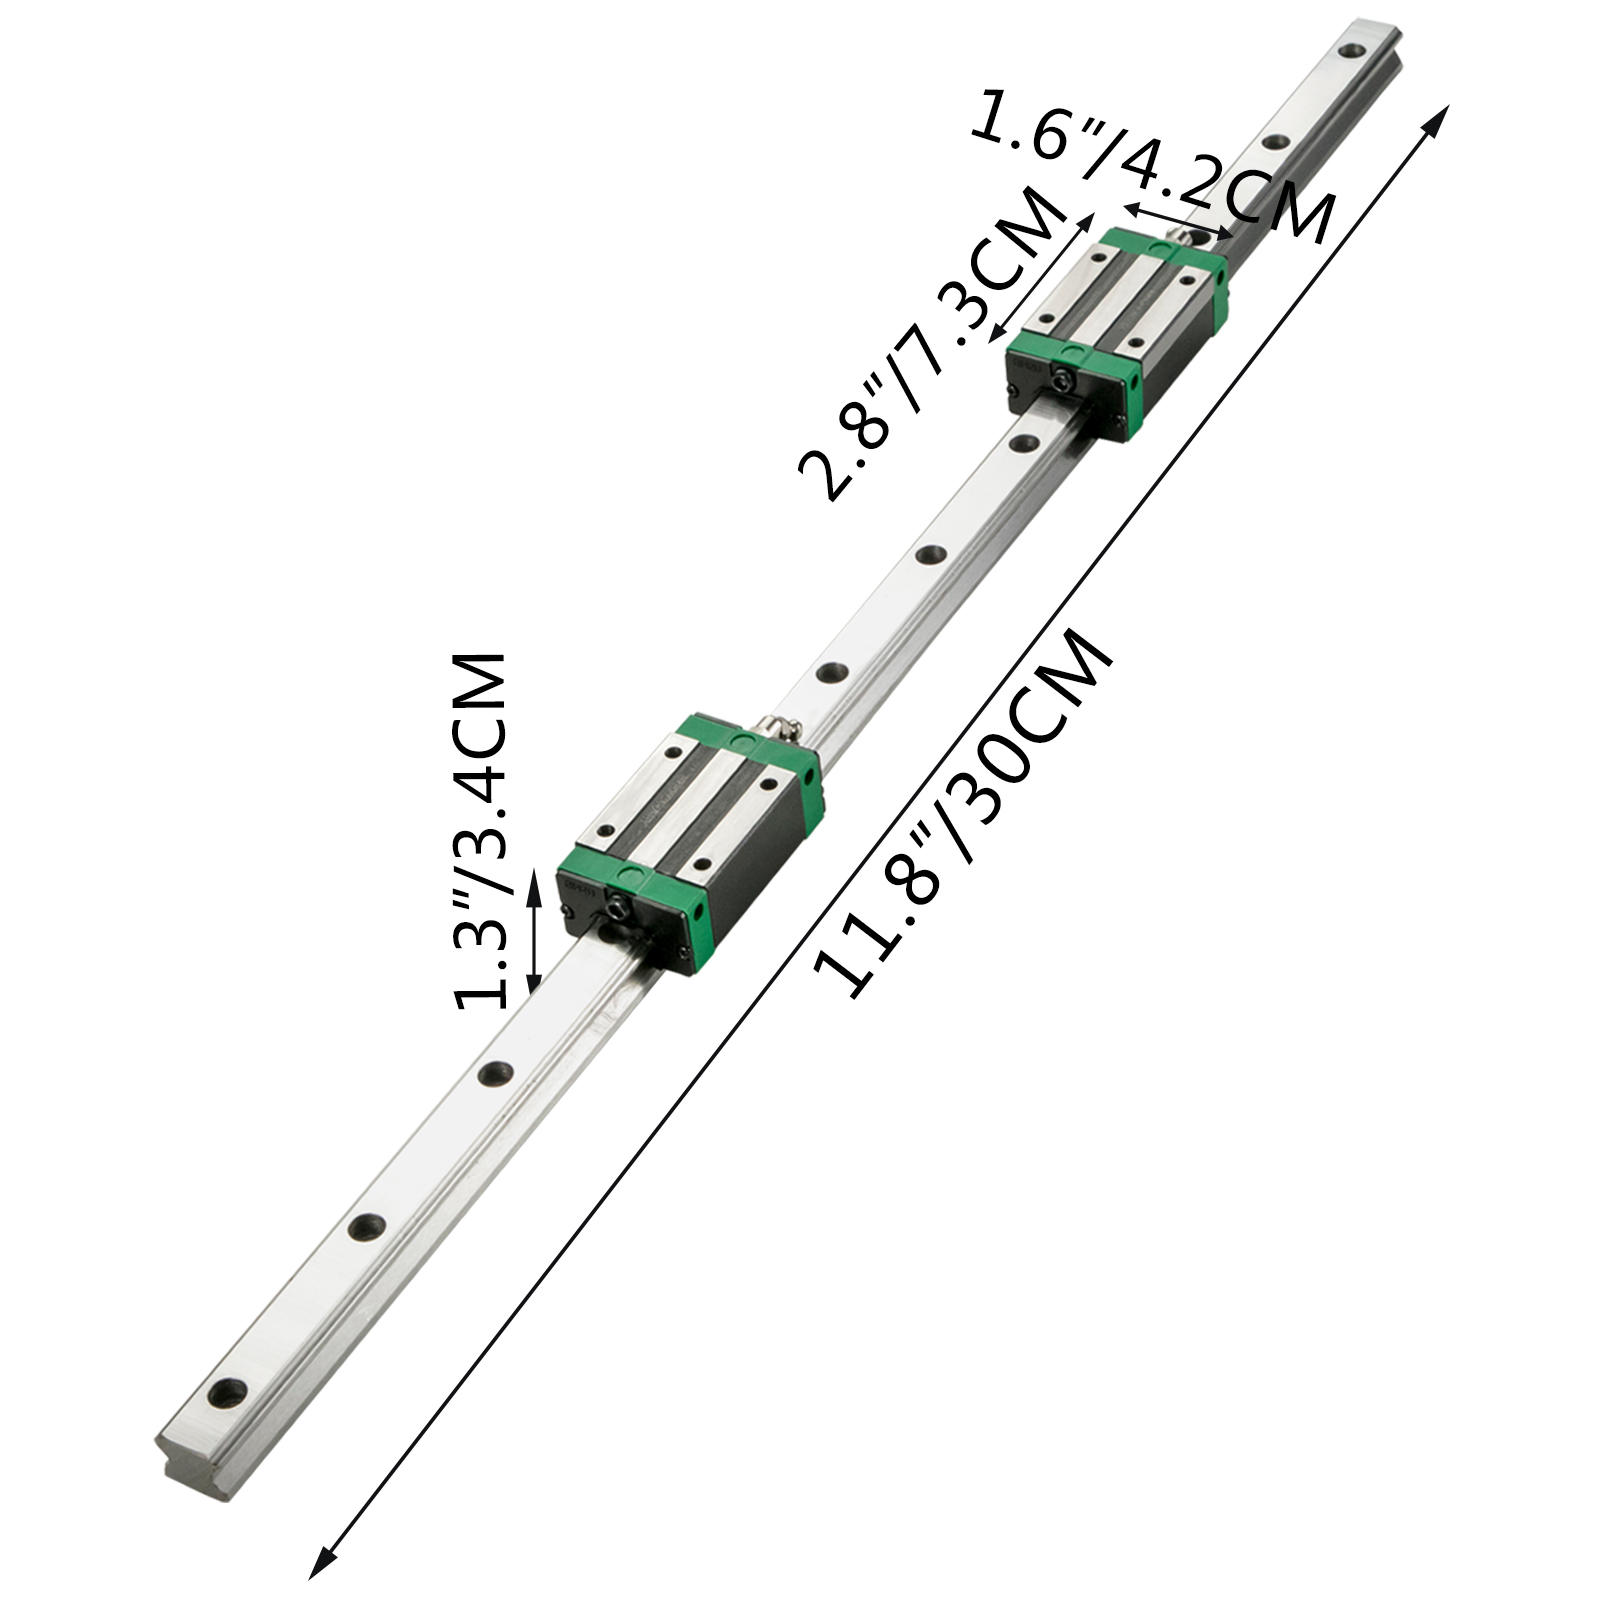 30cm Bearing Steel Linear Sliding Guide Slide Rail & MGN9 Linear Extension Block 